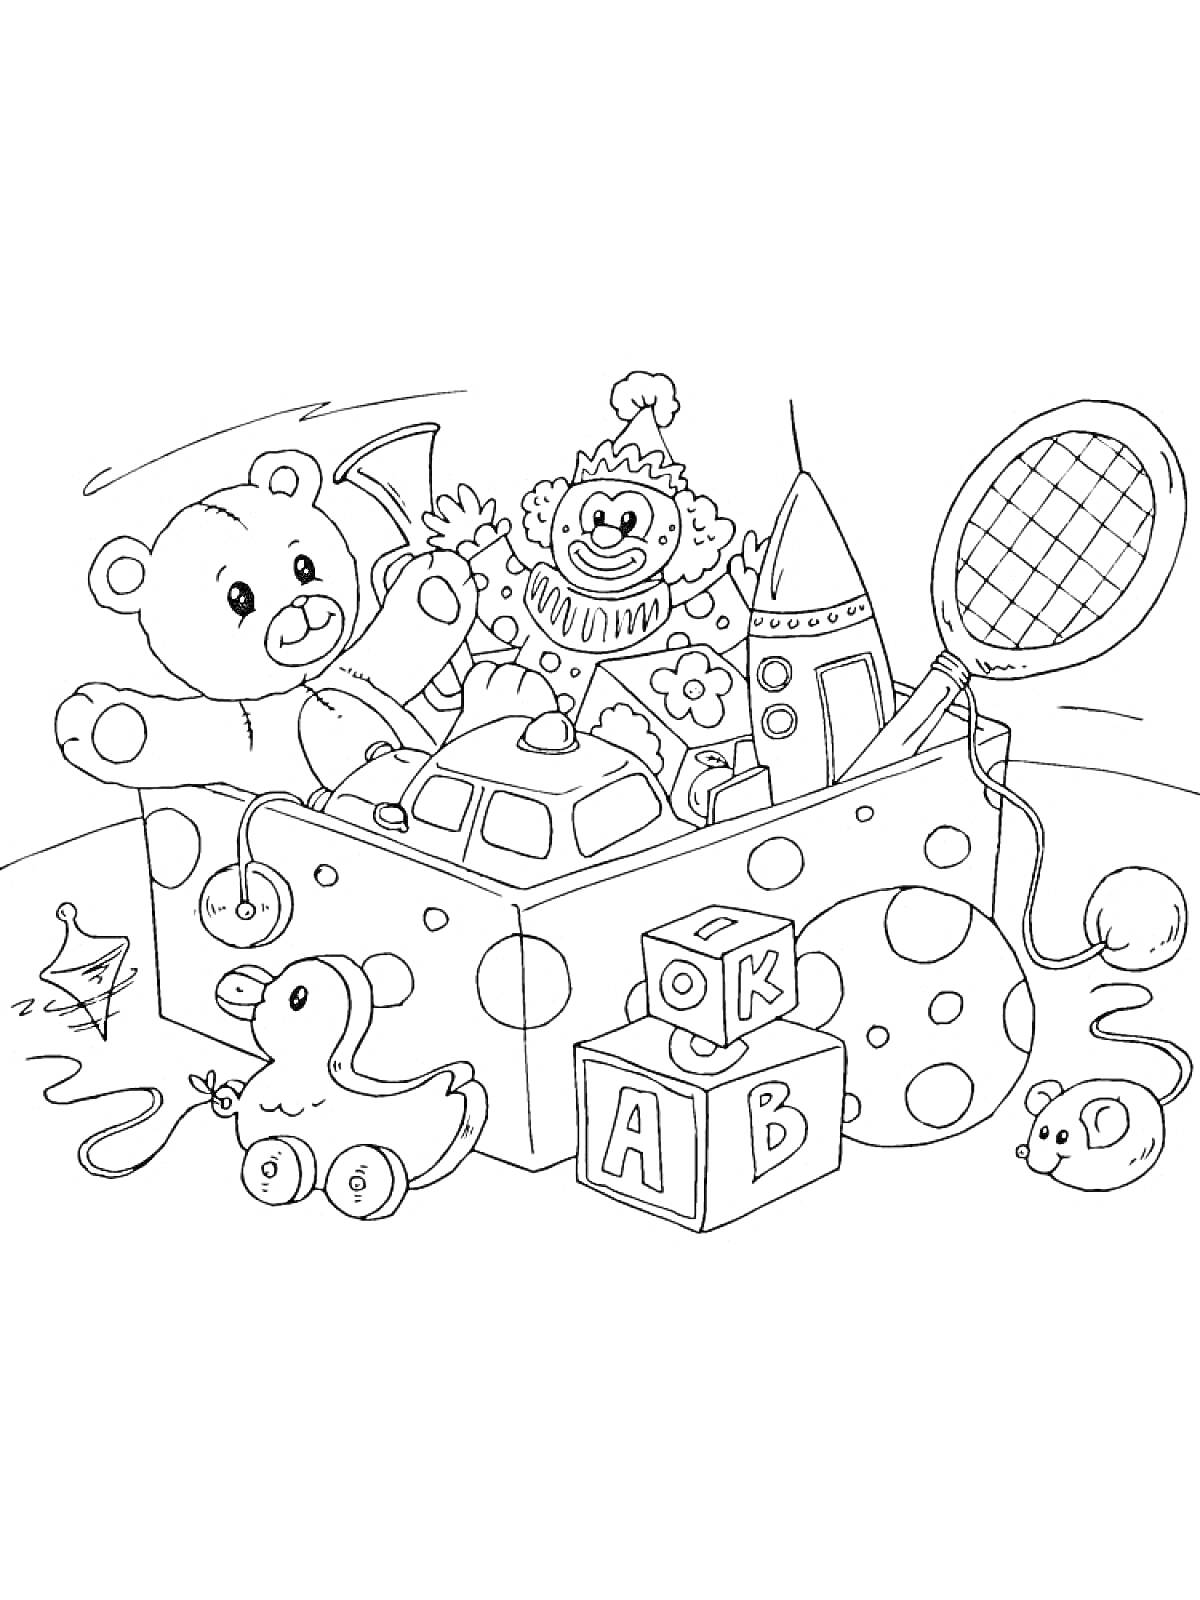 Коробка с игрушками (медвежонок, игрушечный клоун, ракета, ракетка, утиный игрушечный кабриолет, кубики с буквами, мышь, волчок)